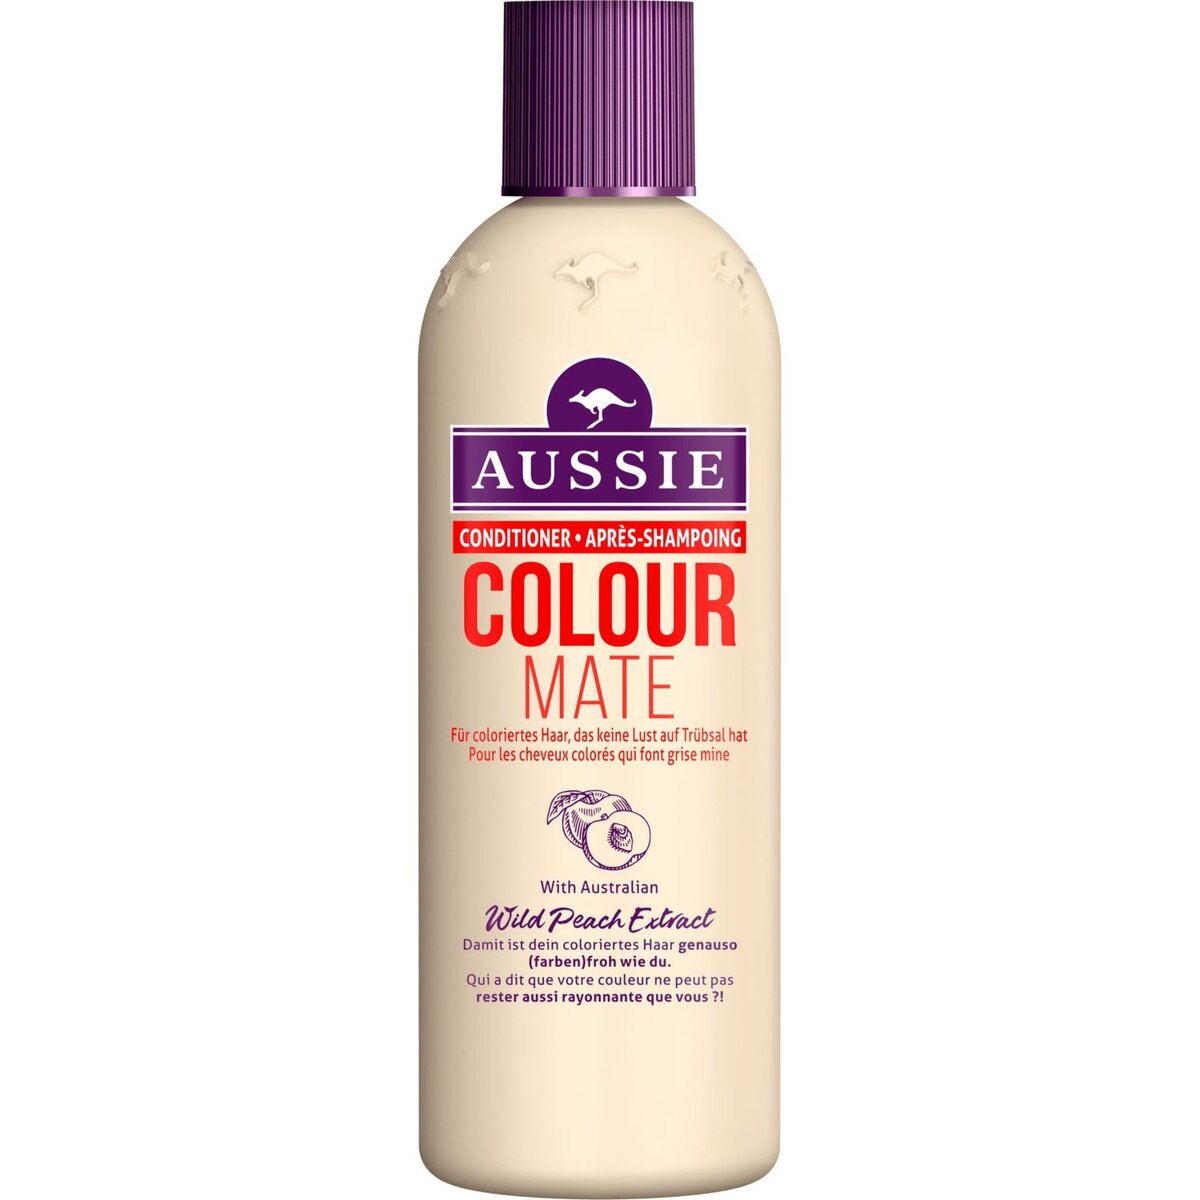 AUSSIE Colour Mate après-shampoing conditioner pour cheveux colorés 250ml